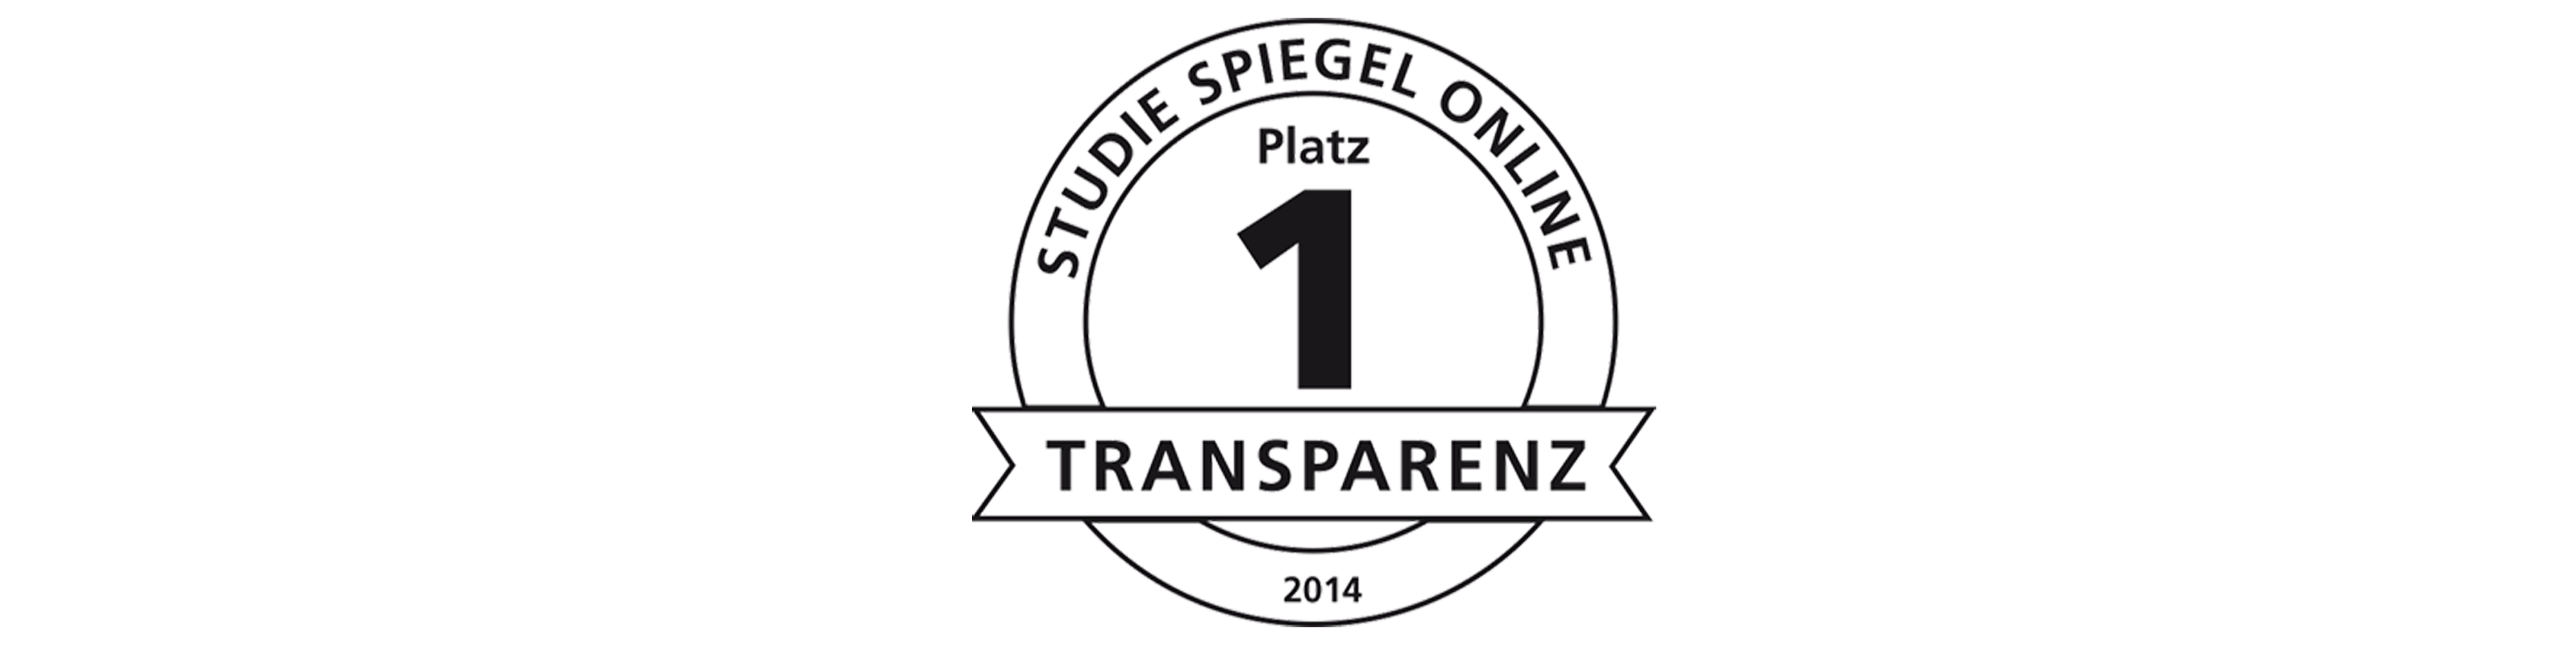 Transparenzpreis World Vision: Spiegel Online 2014